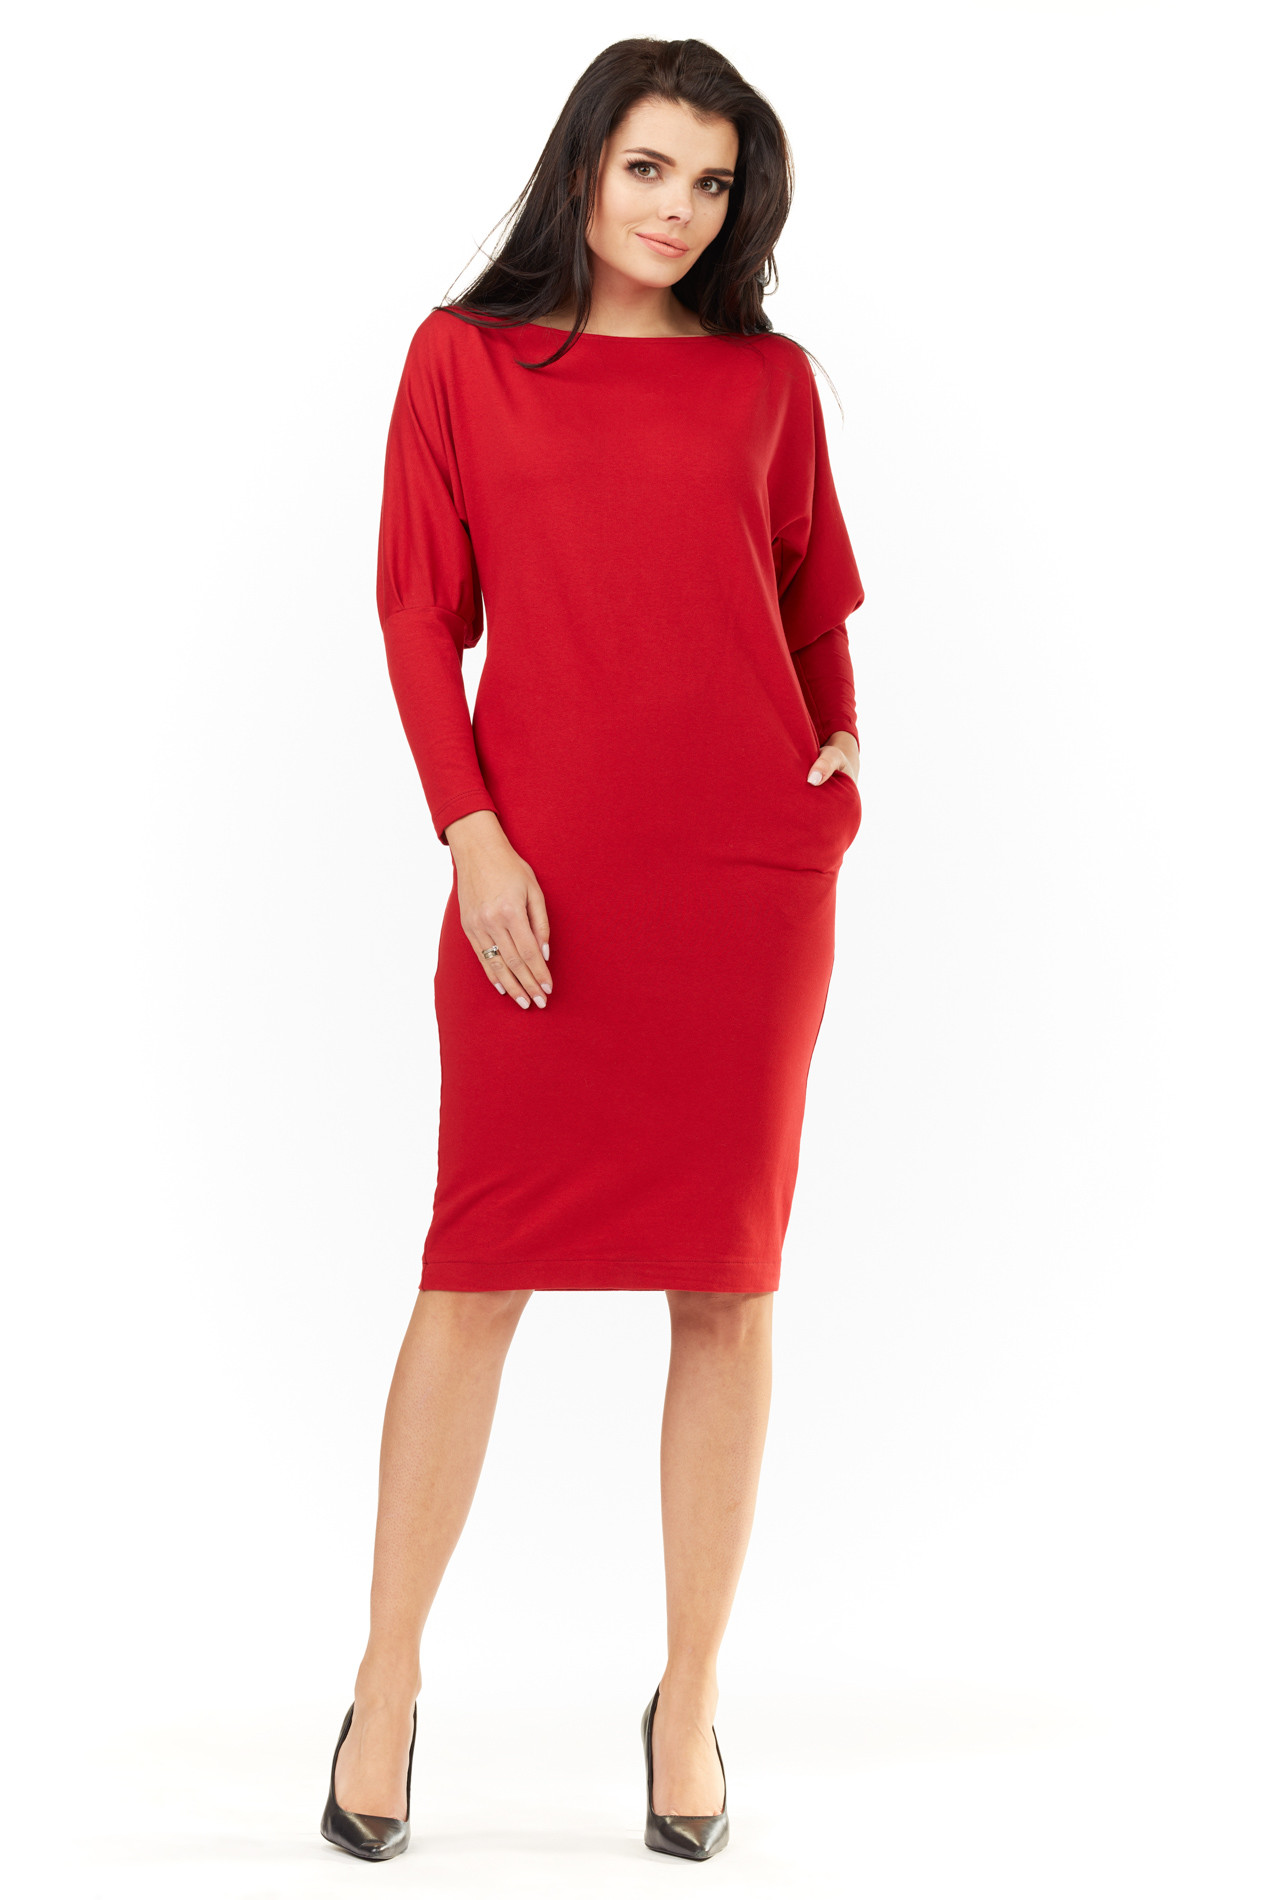 Dámské šaty A206 červené - Awama S/M